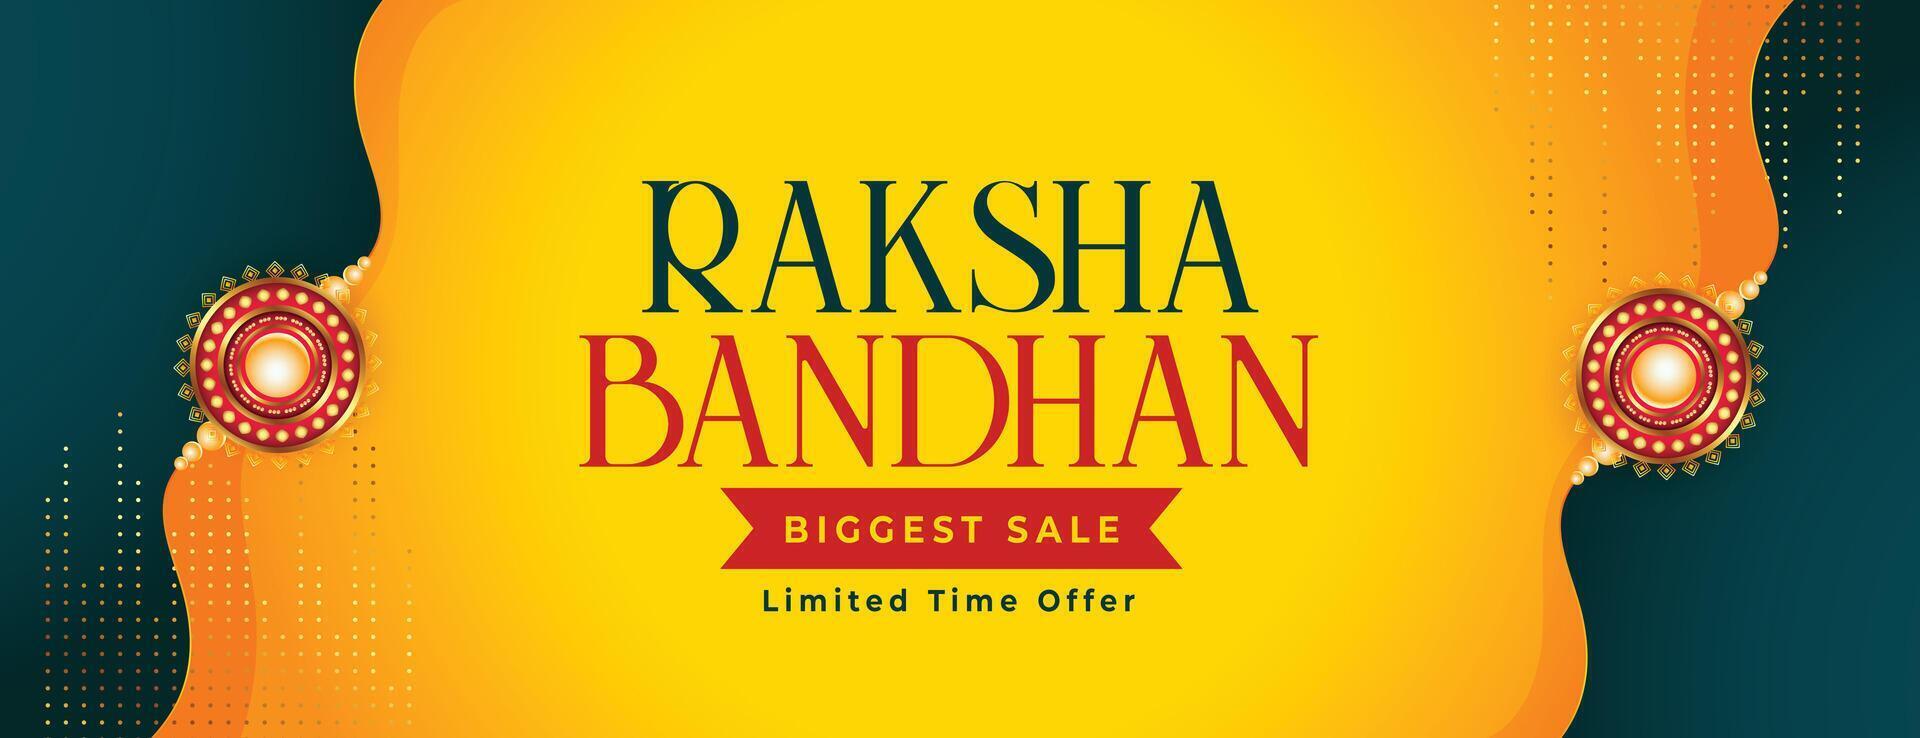 raksha bandhan beautiful sale banner design vector